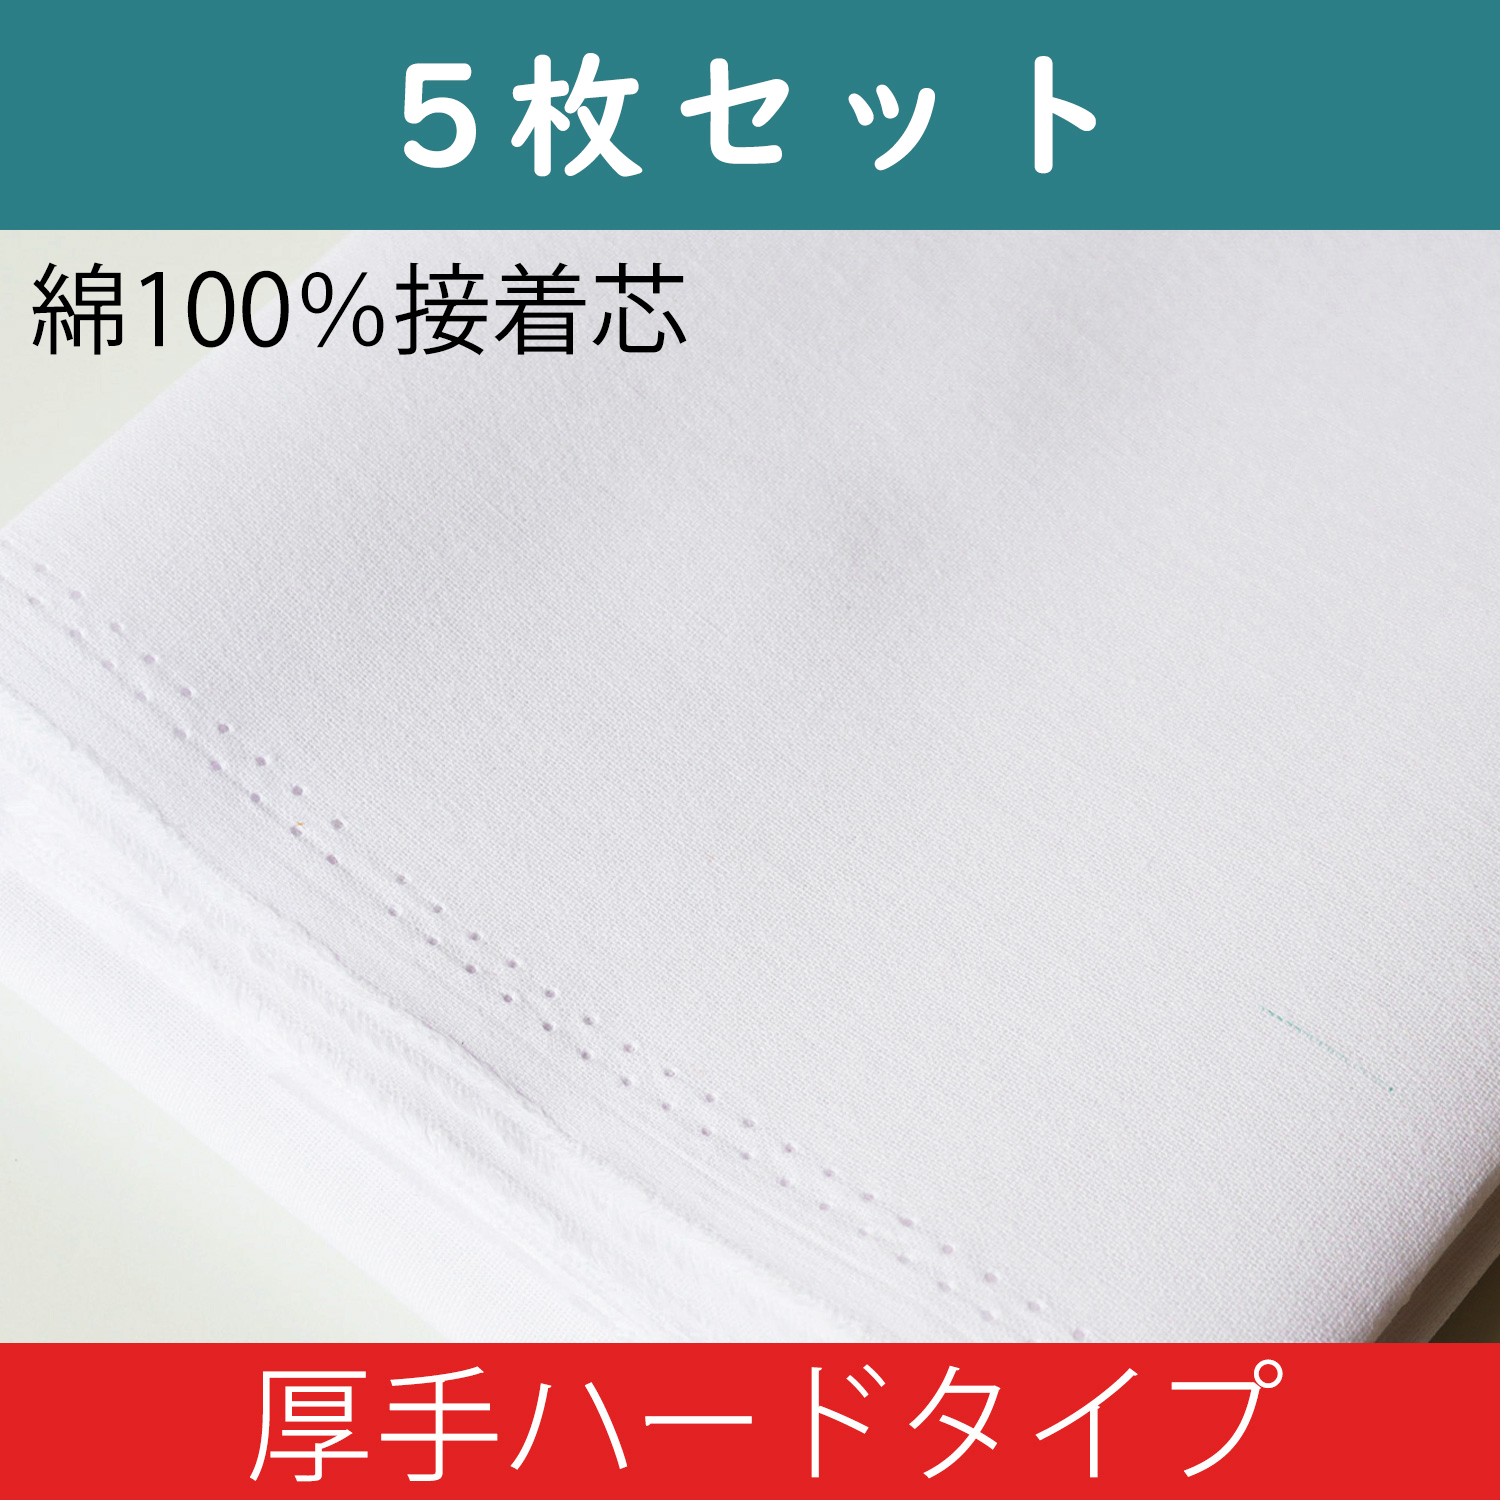 N-14W-5 100% Cotton Adhesive Interlining <Herd Type> 1 Sheet 5pack set (set)